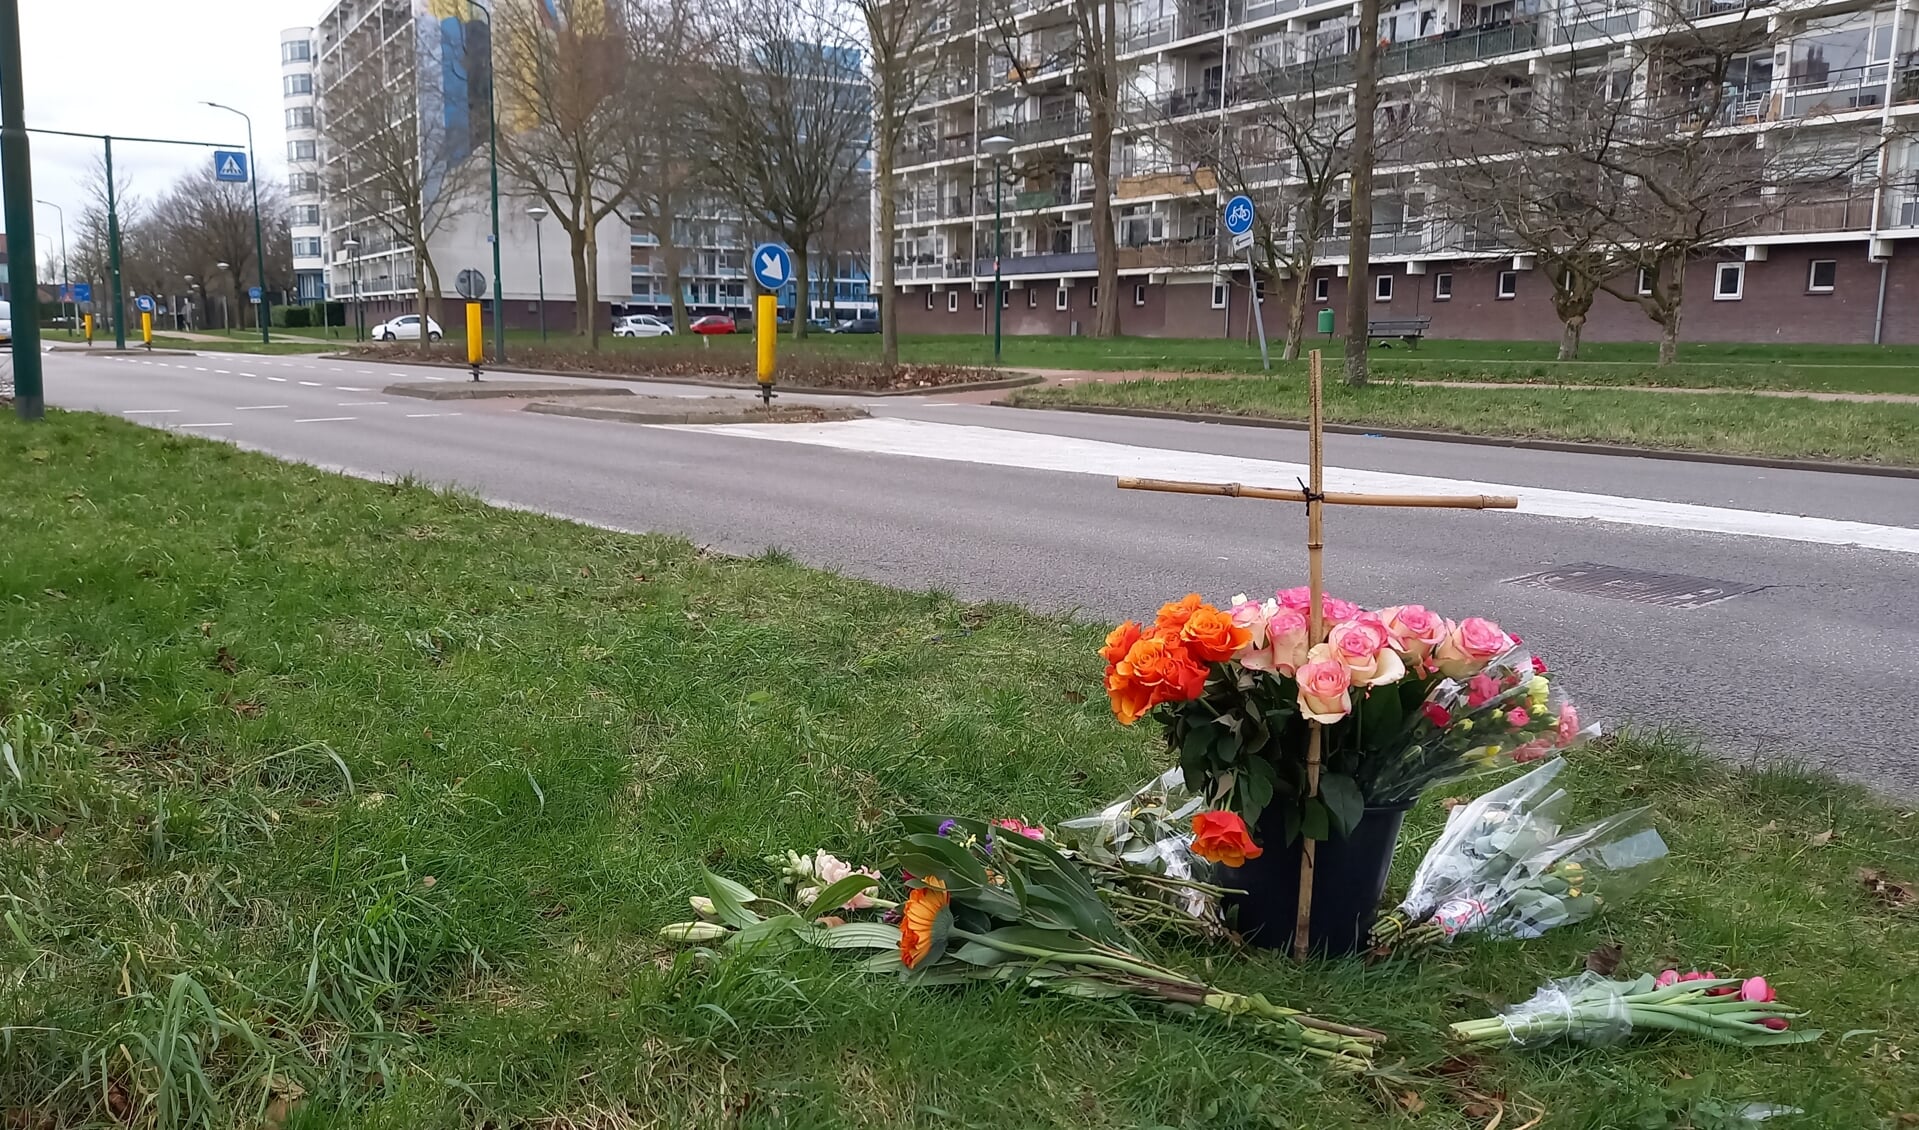 Al op zondag, maar ook de dagen erna werden bloemen gelegd op de plek van het dodelijke ongeval dat zaterdagavond plaatshad op de Dalweg.